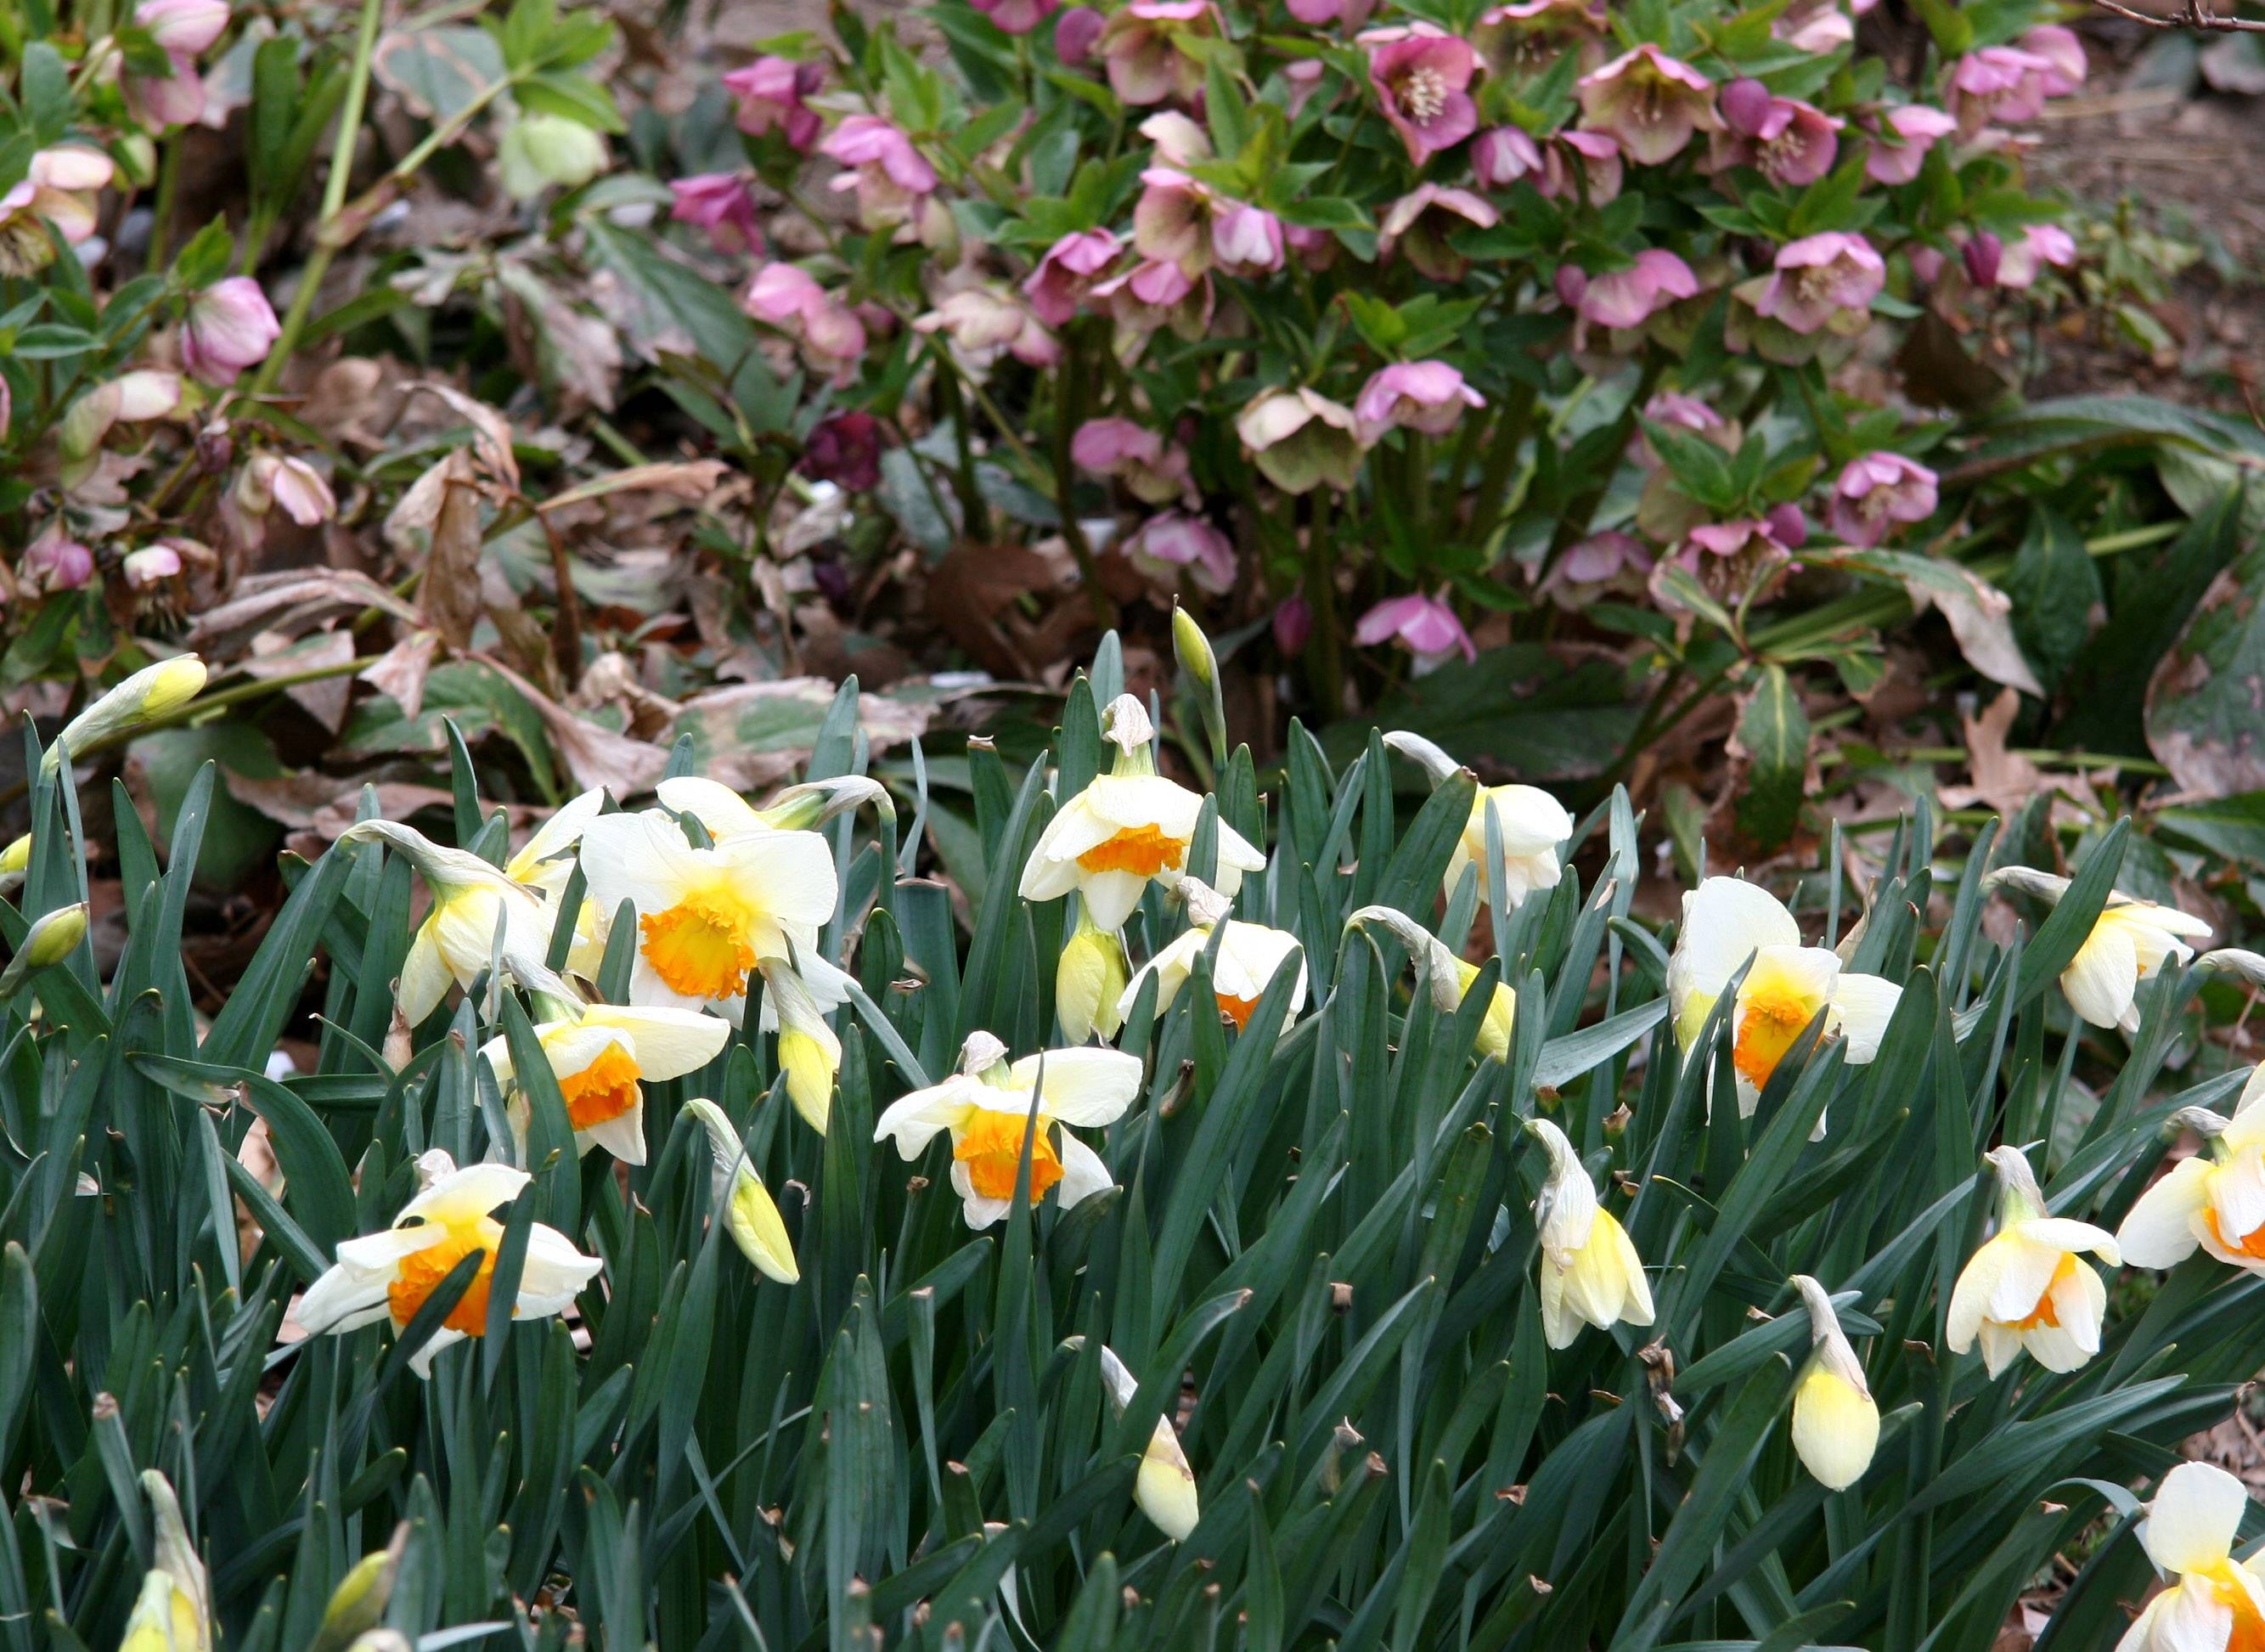 Daffodils & Lenten Roses